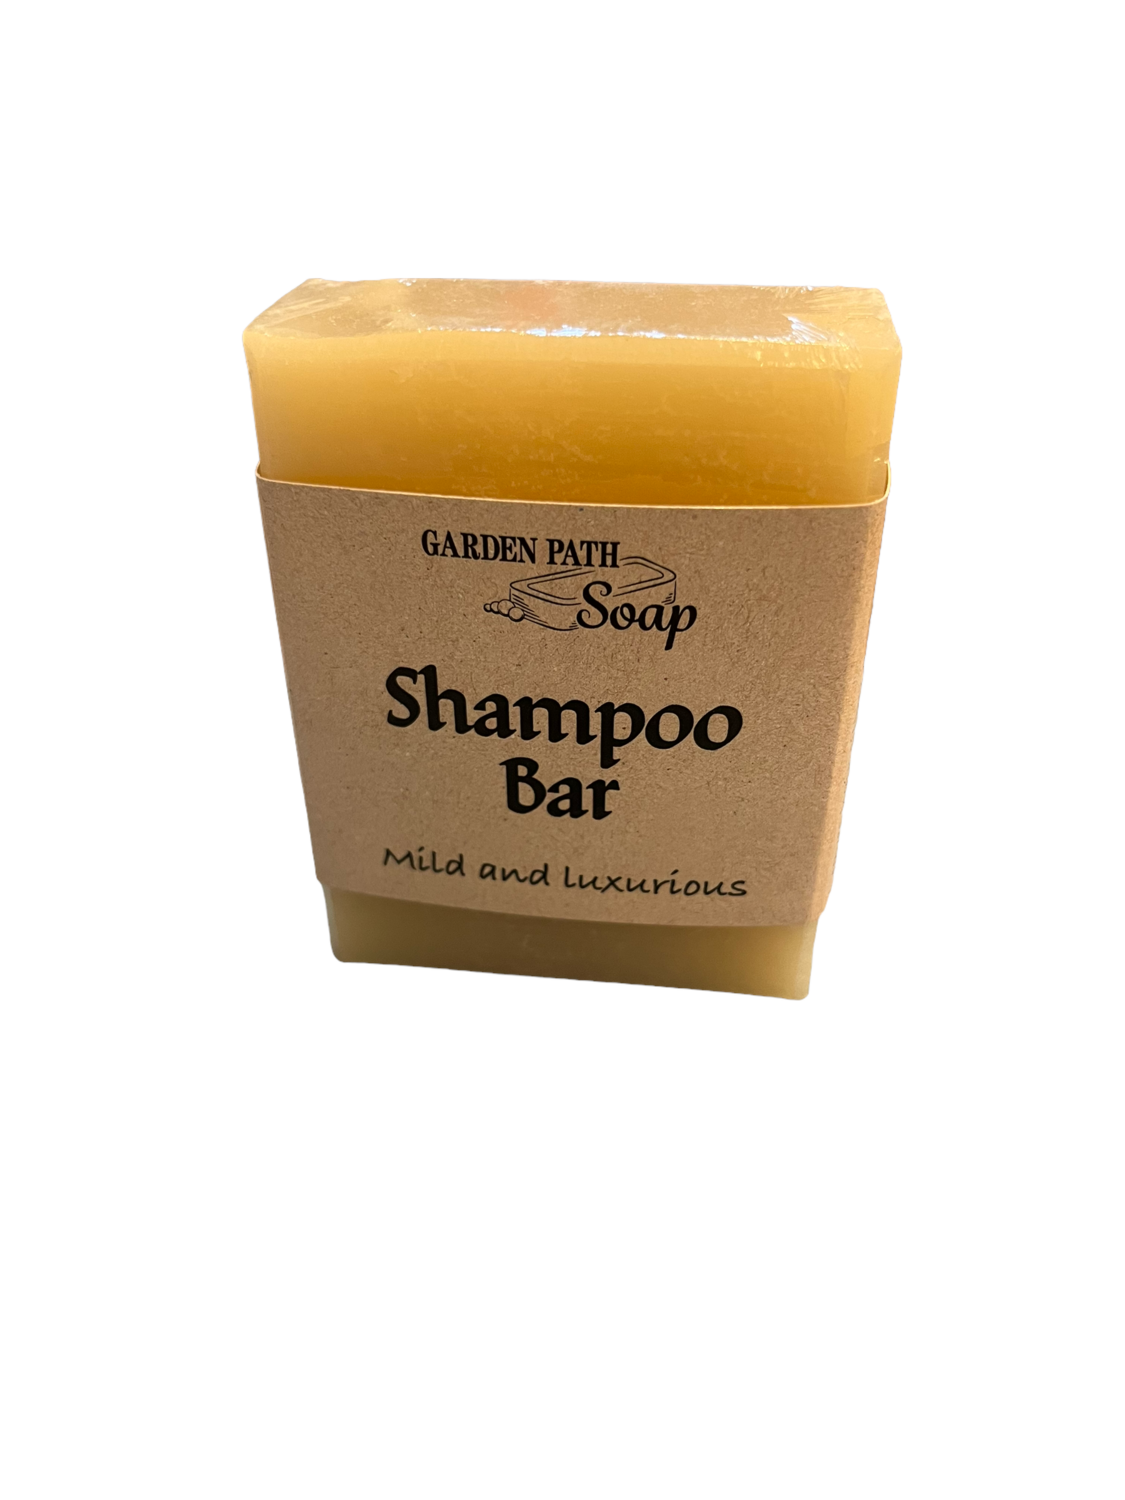 P&L- Garden Path Soap - Shampoo Bar